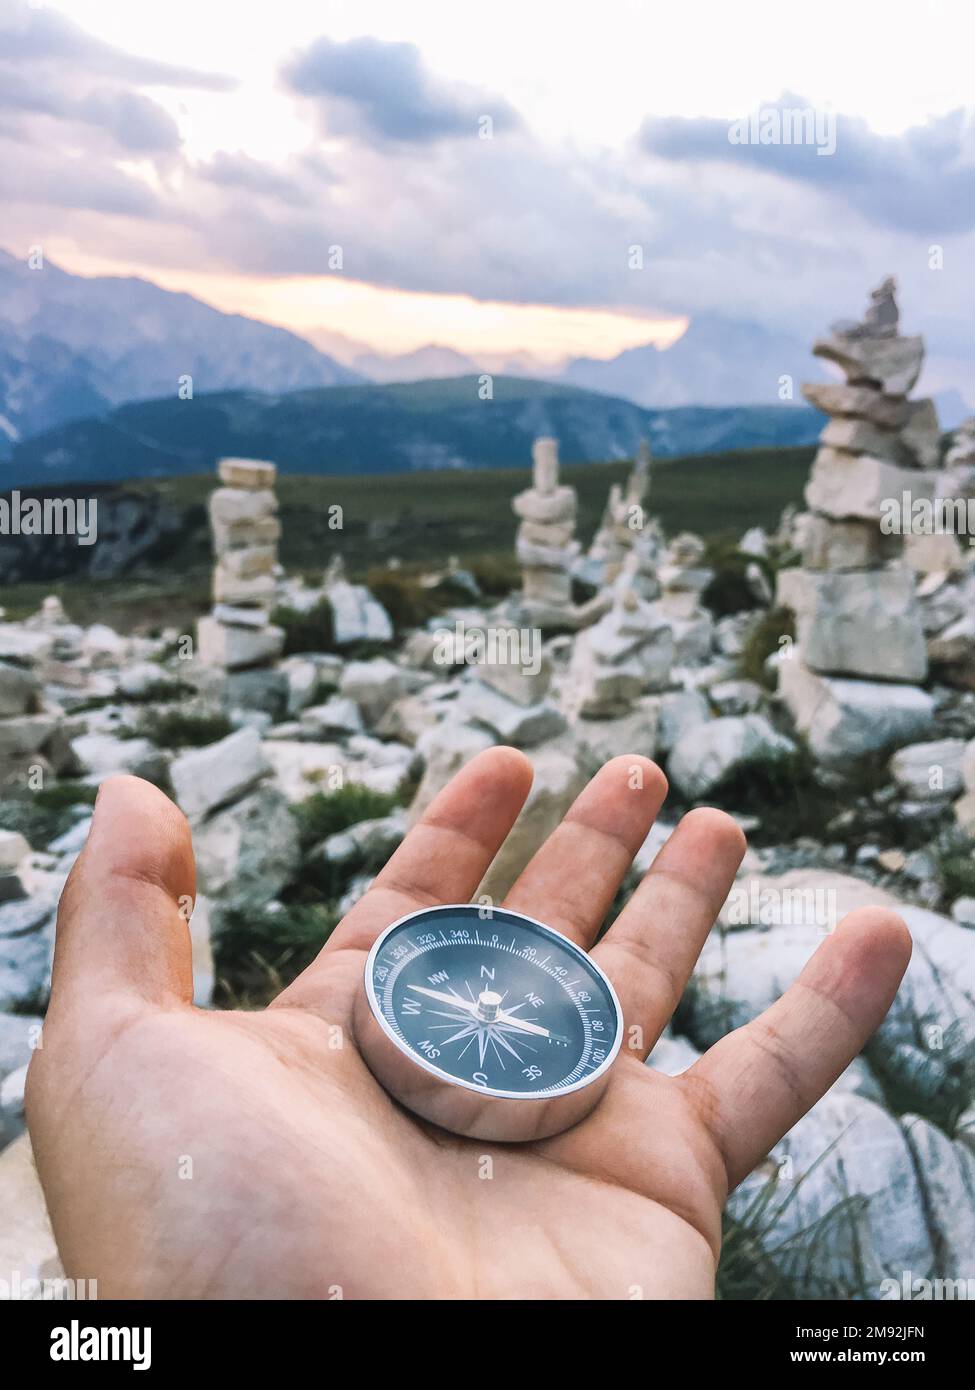 Kompass in der Hand in einer bergigen Landschaft. Ein Reisender, der seine Träume auf einem Berg mit steinkronen im Hintergrund wahr werden lässt. - Ja, Stimmt Stockfoto